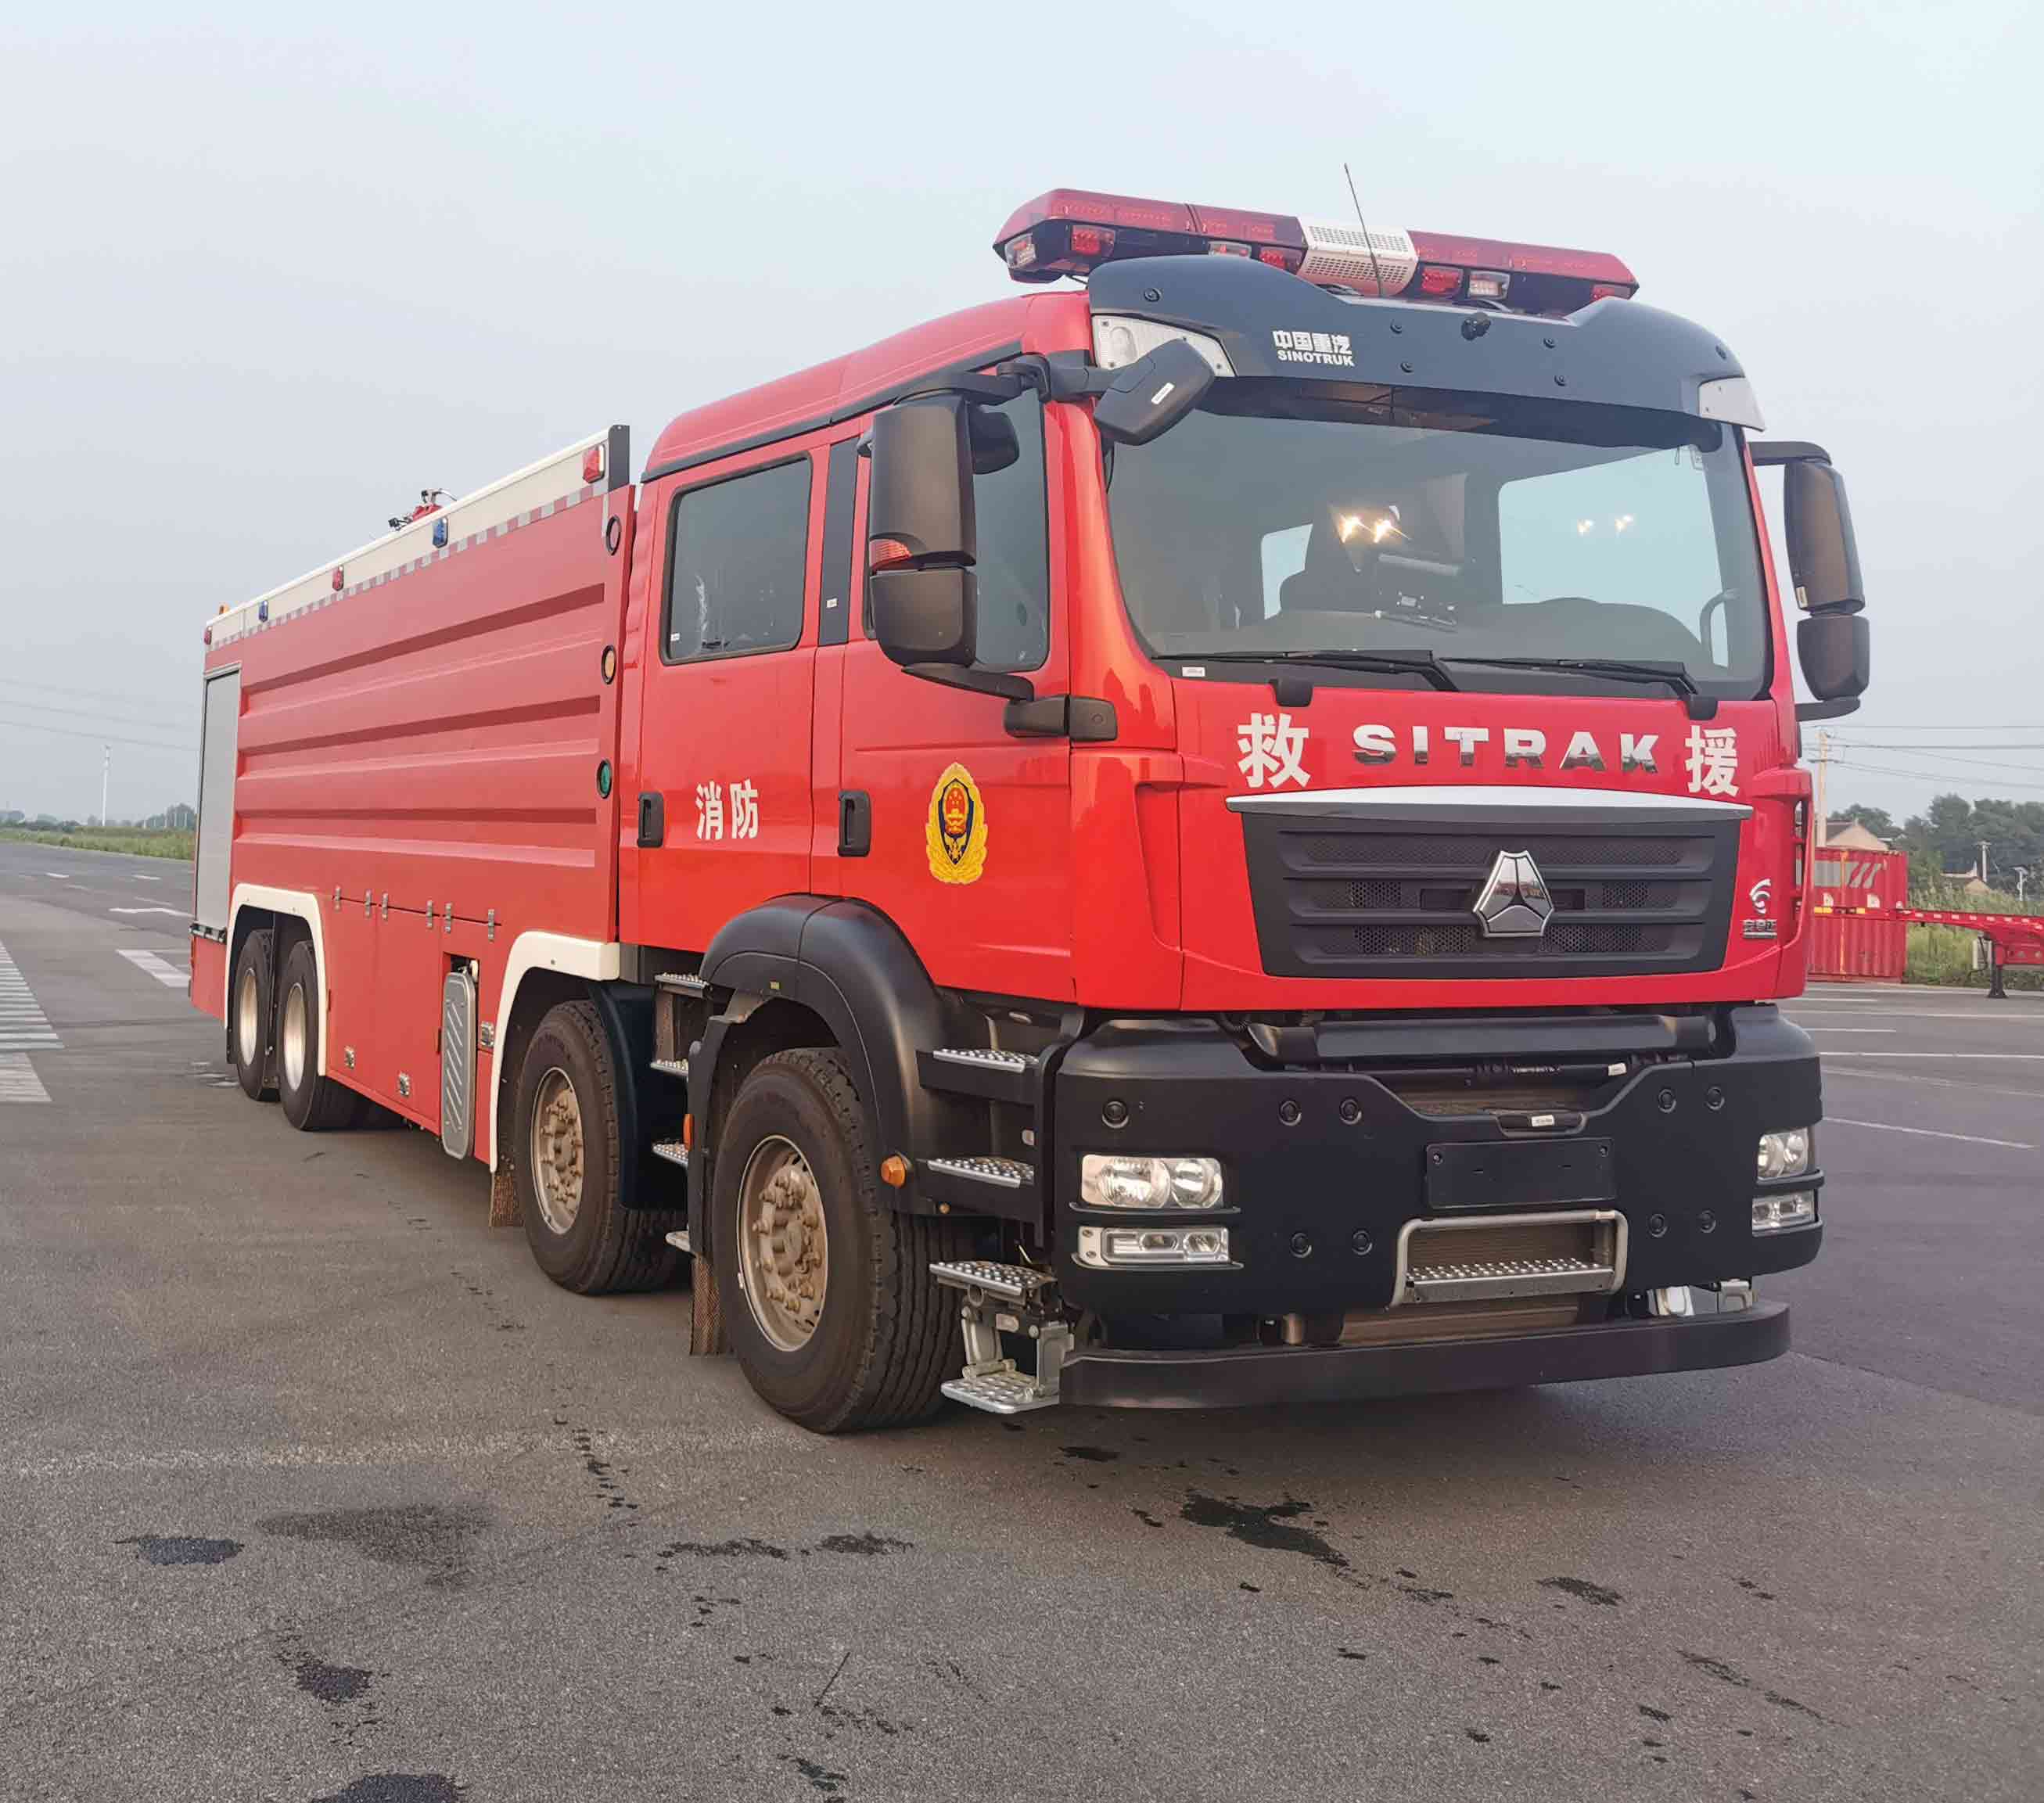 安奇正牌(AQZ5430GXFPM250)泡沫消防車結構及工作原理搶險救援消防車落戶圖片